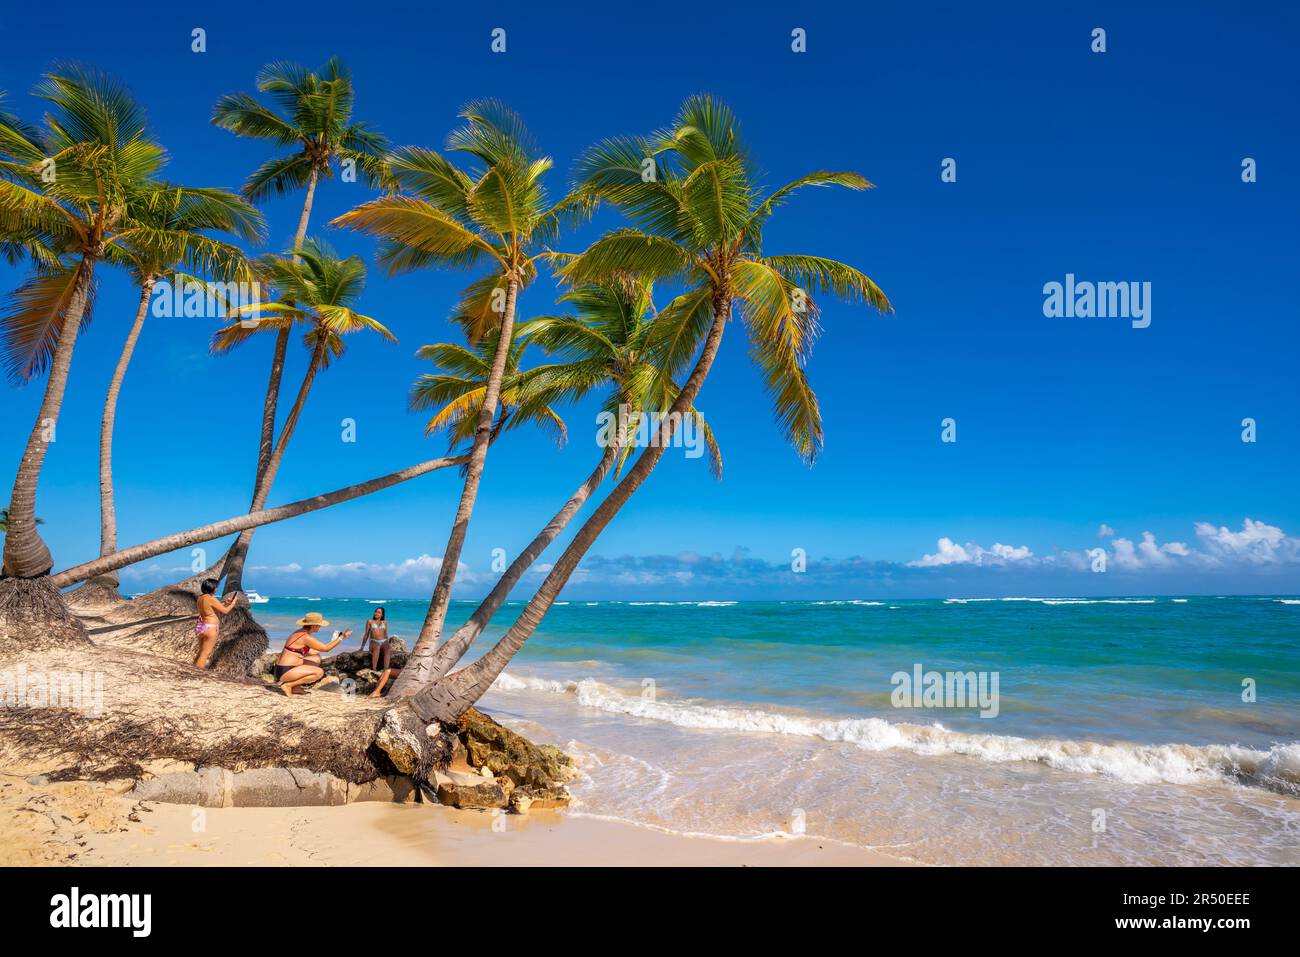 Vue sur la mer, la plage et les palmiers par une journée ensoleillée, Bavaro Beach, Punta Cana, République Dominicaine, Antilles, Caraïbes, Amérique centrale Banque D'Images